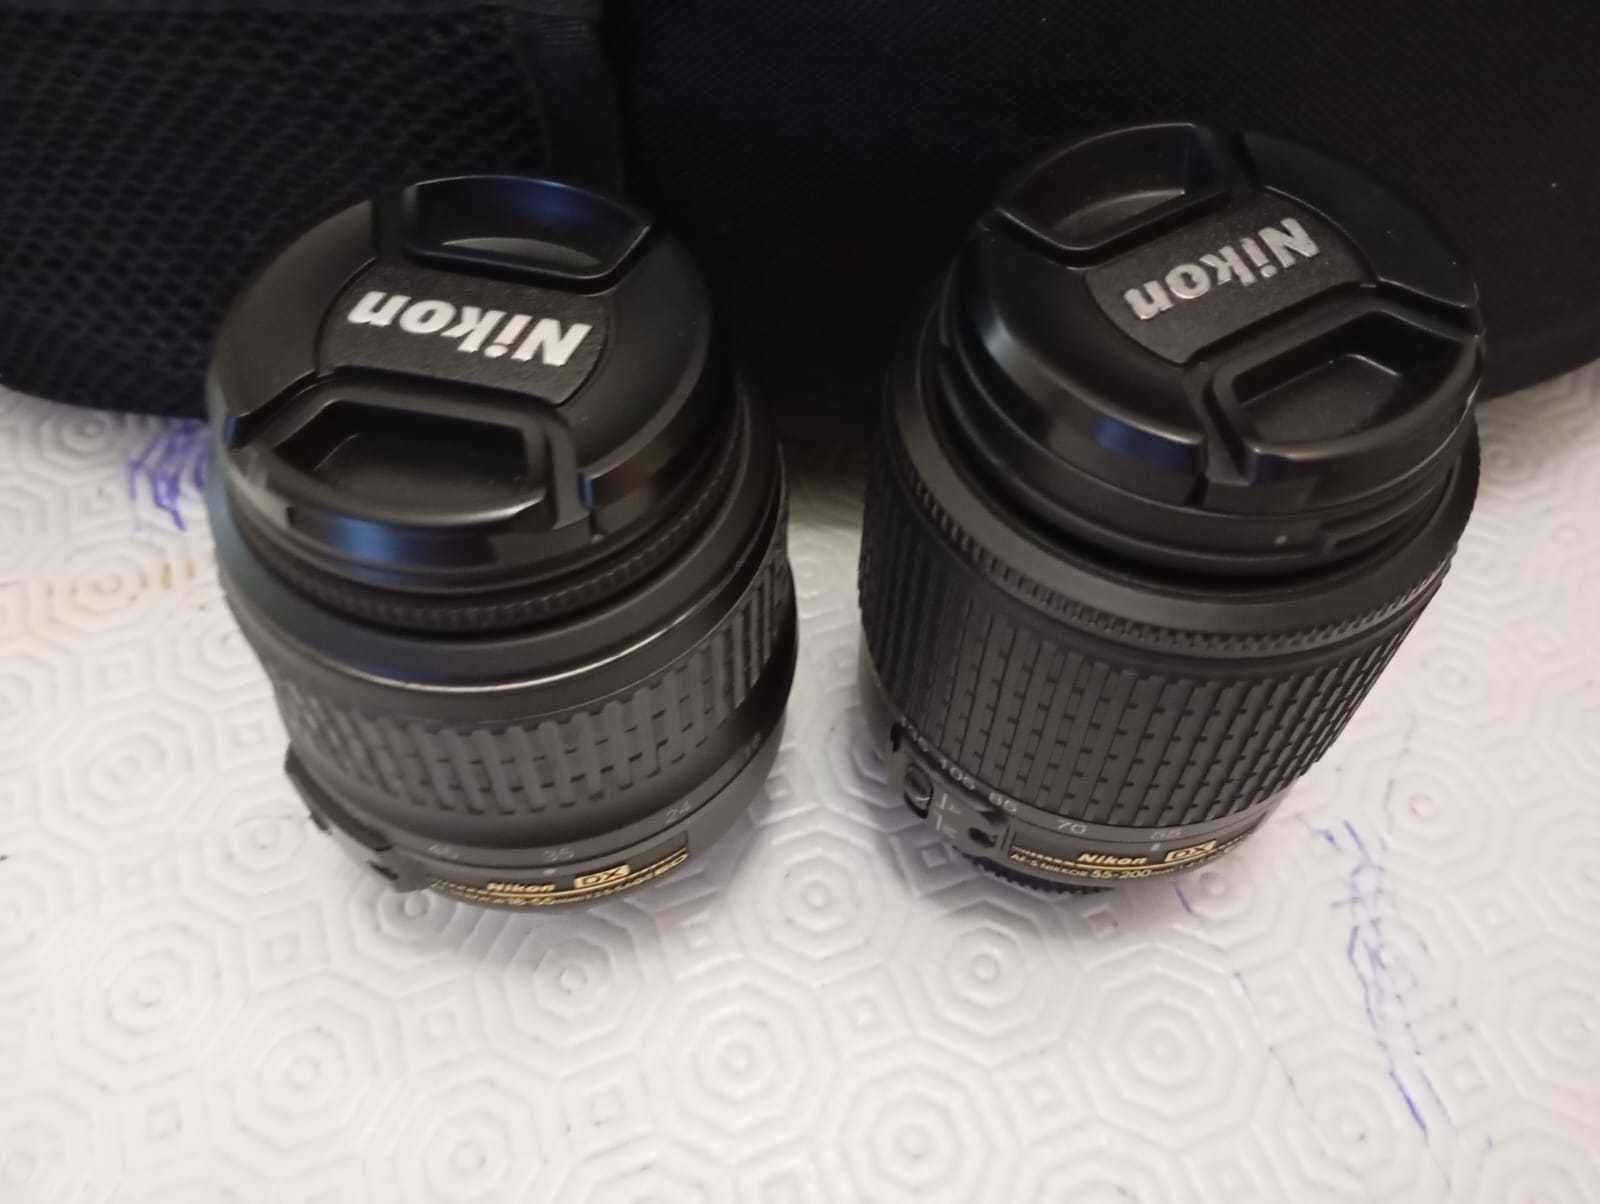 Vende-se como novo: Câmara Fotográfica Nikon com duas objetivas Nikon